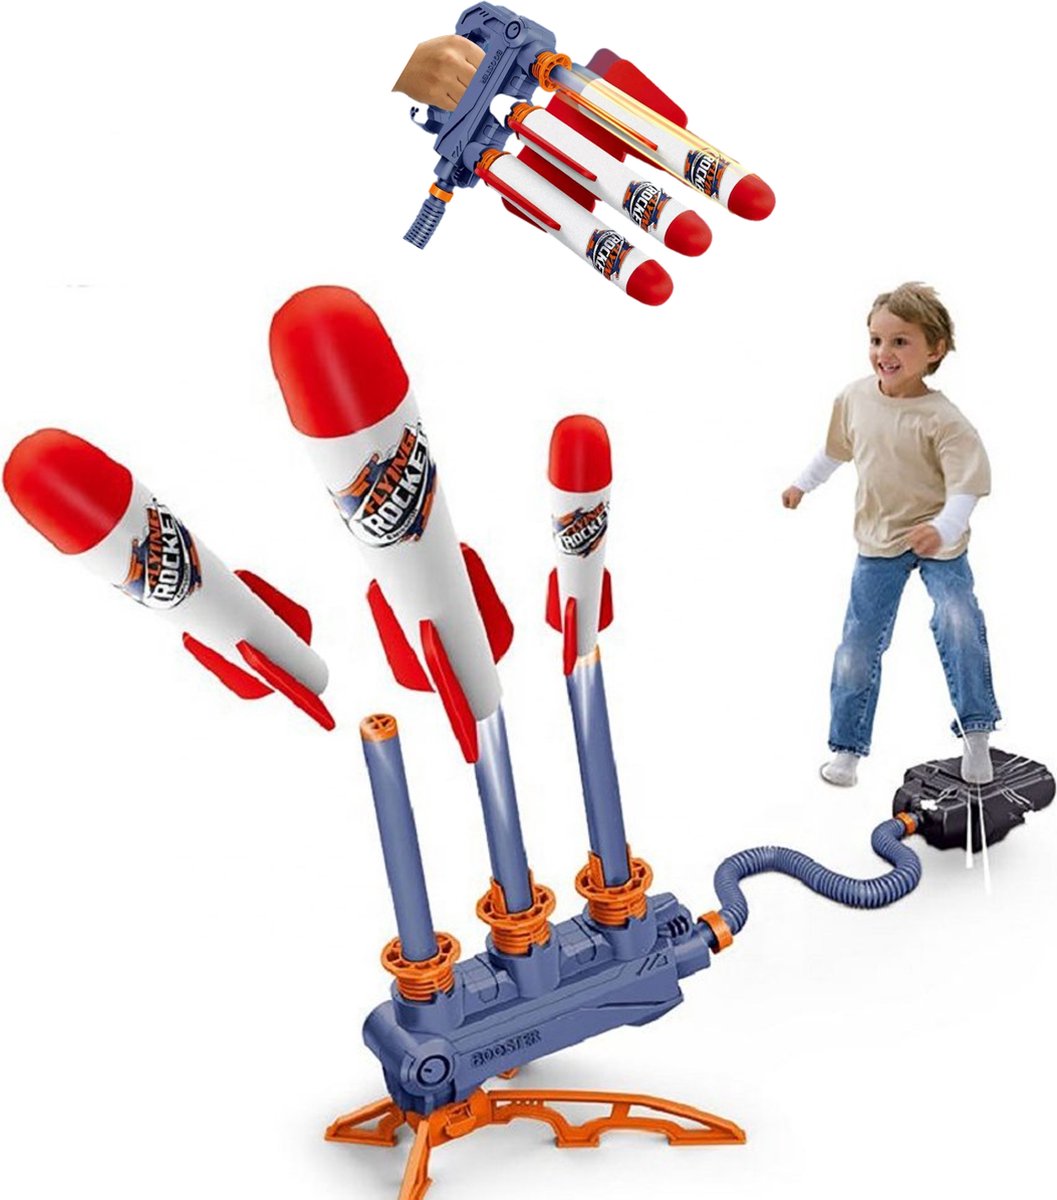 GT - Stomp Rocket Schieten buitenspeelgoed met LED voor kinderen - Inclusief 3 raketten - Zomer Speelgoed voor jongens / meisjes - Nieuwste rage 2023 zomer zwembad speelgoed verjaardag